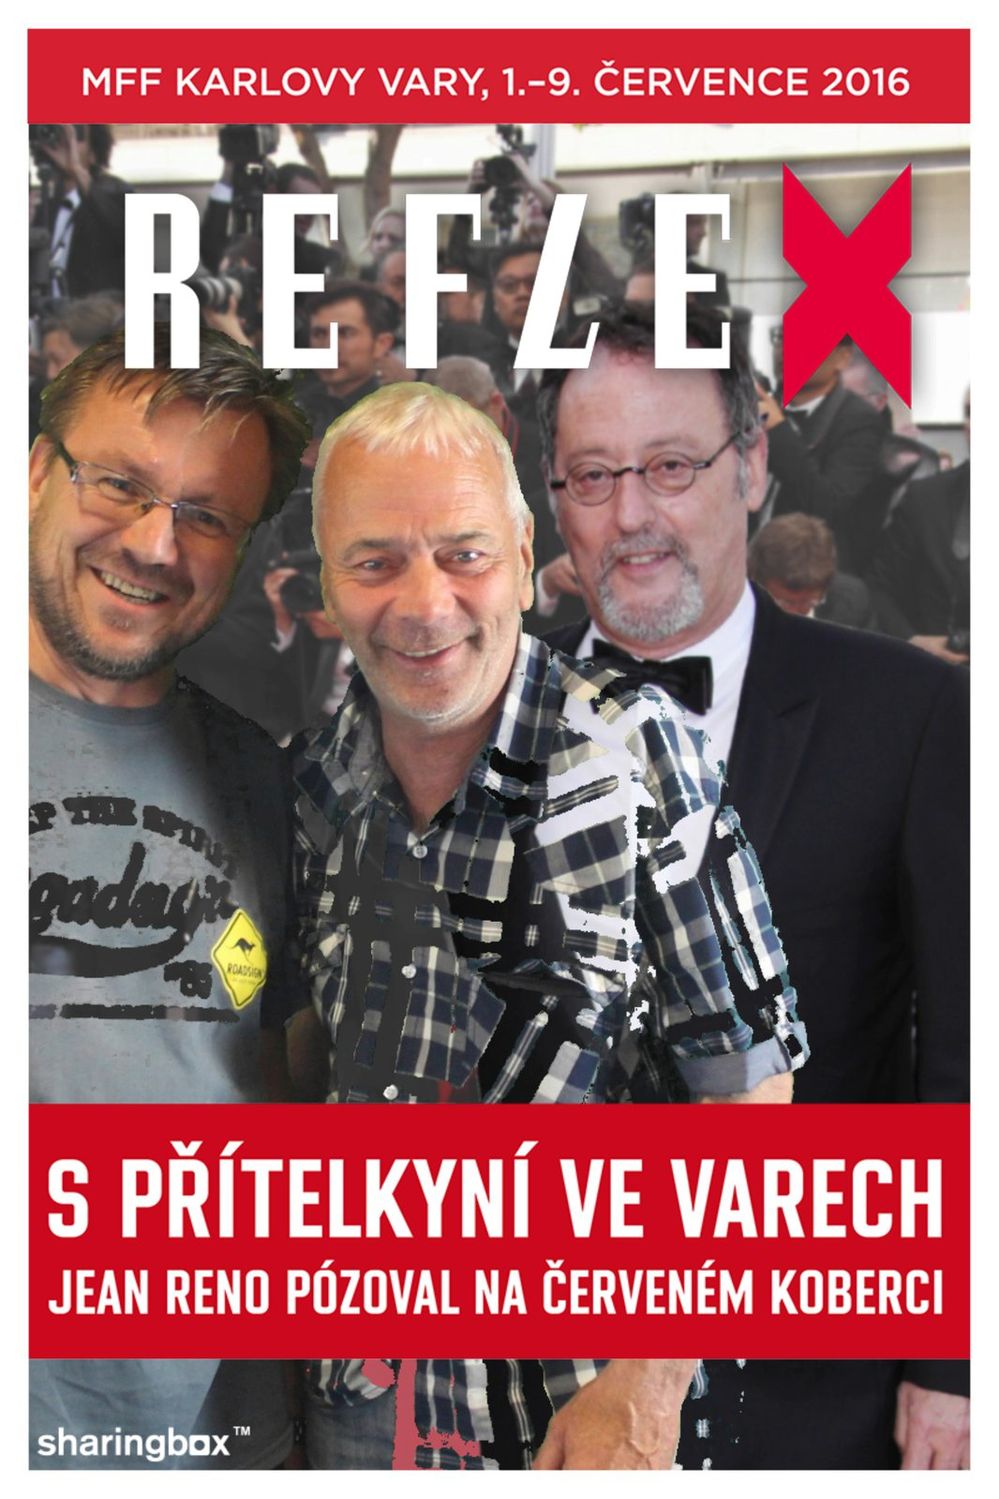 Karlovarské titulní strany Reflexu.